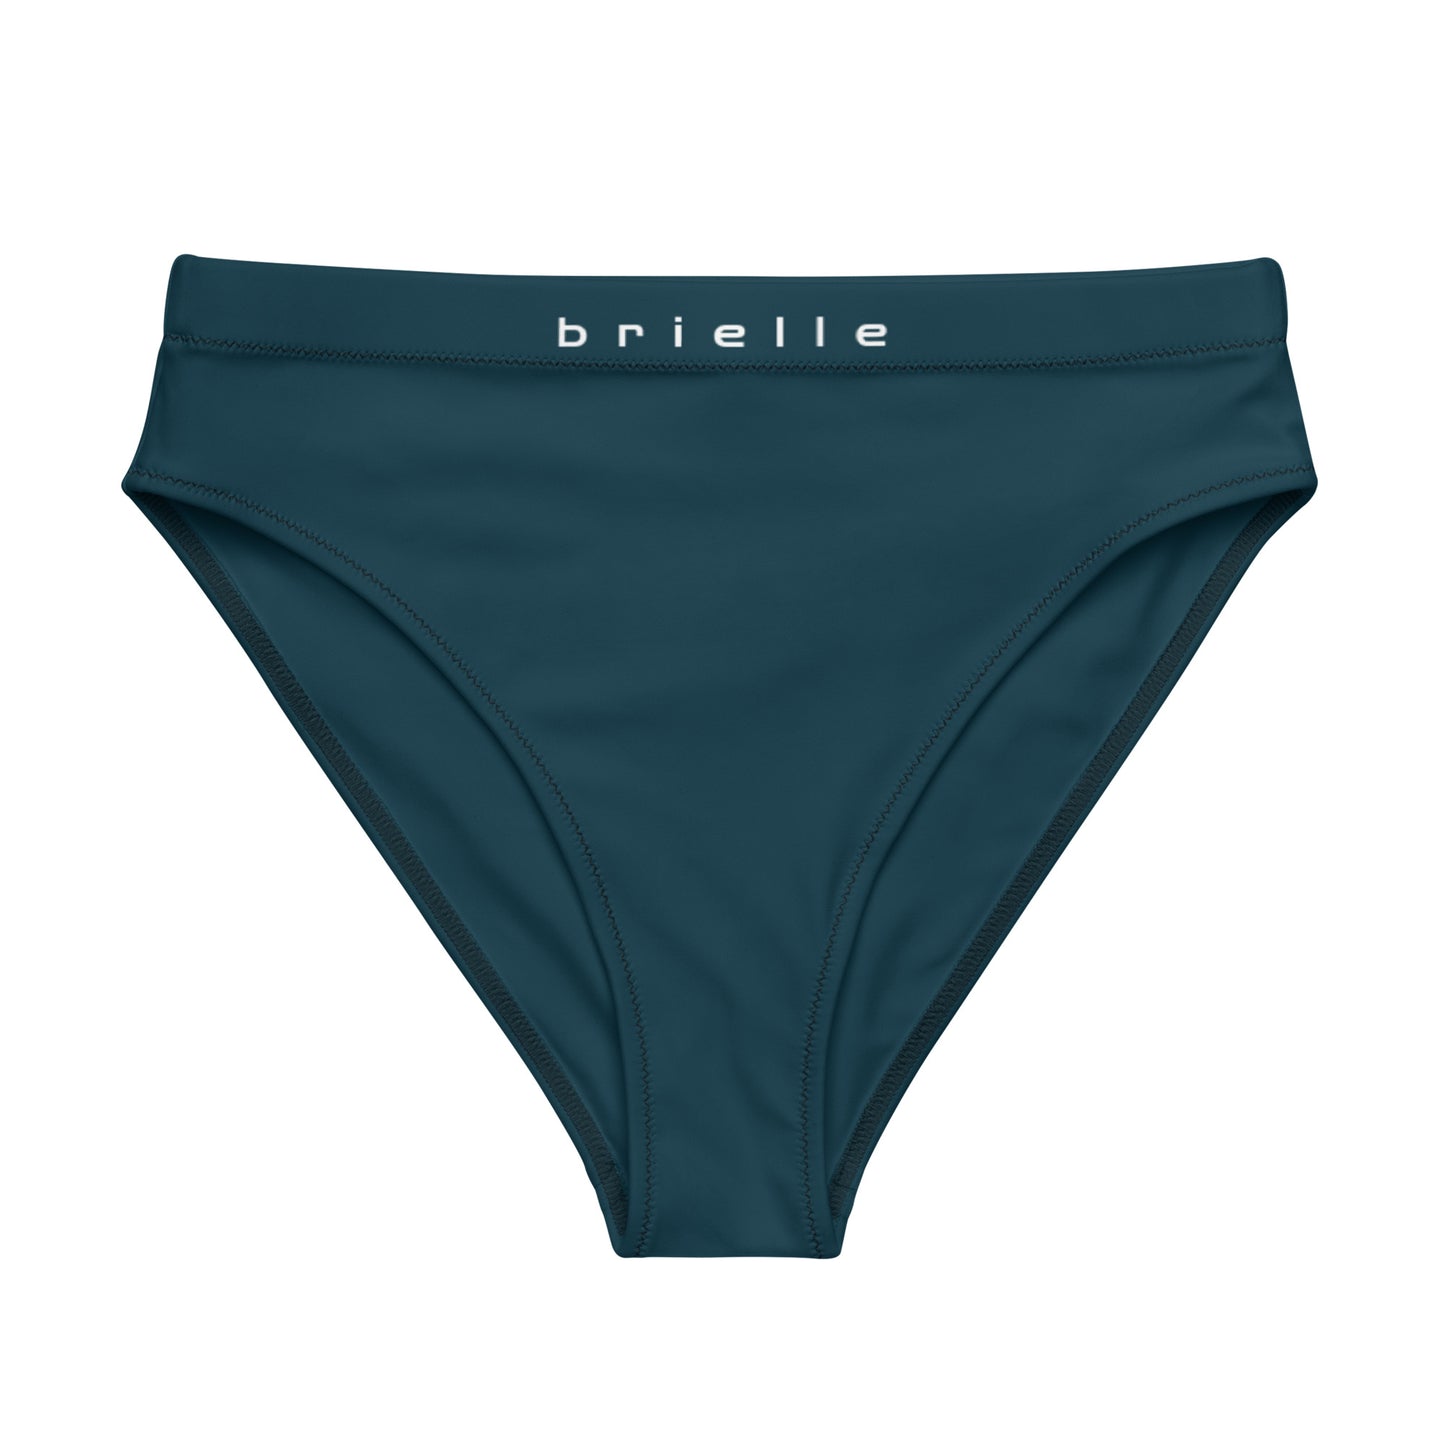 Brielle High-Waisted High-Cut Leg Hip-Popping Blue Whale Tucking Panty.. tunnellsCo.